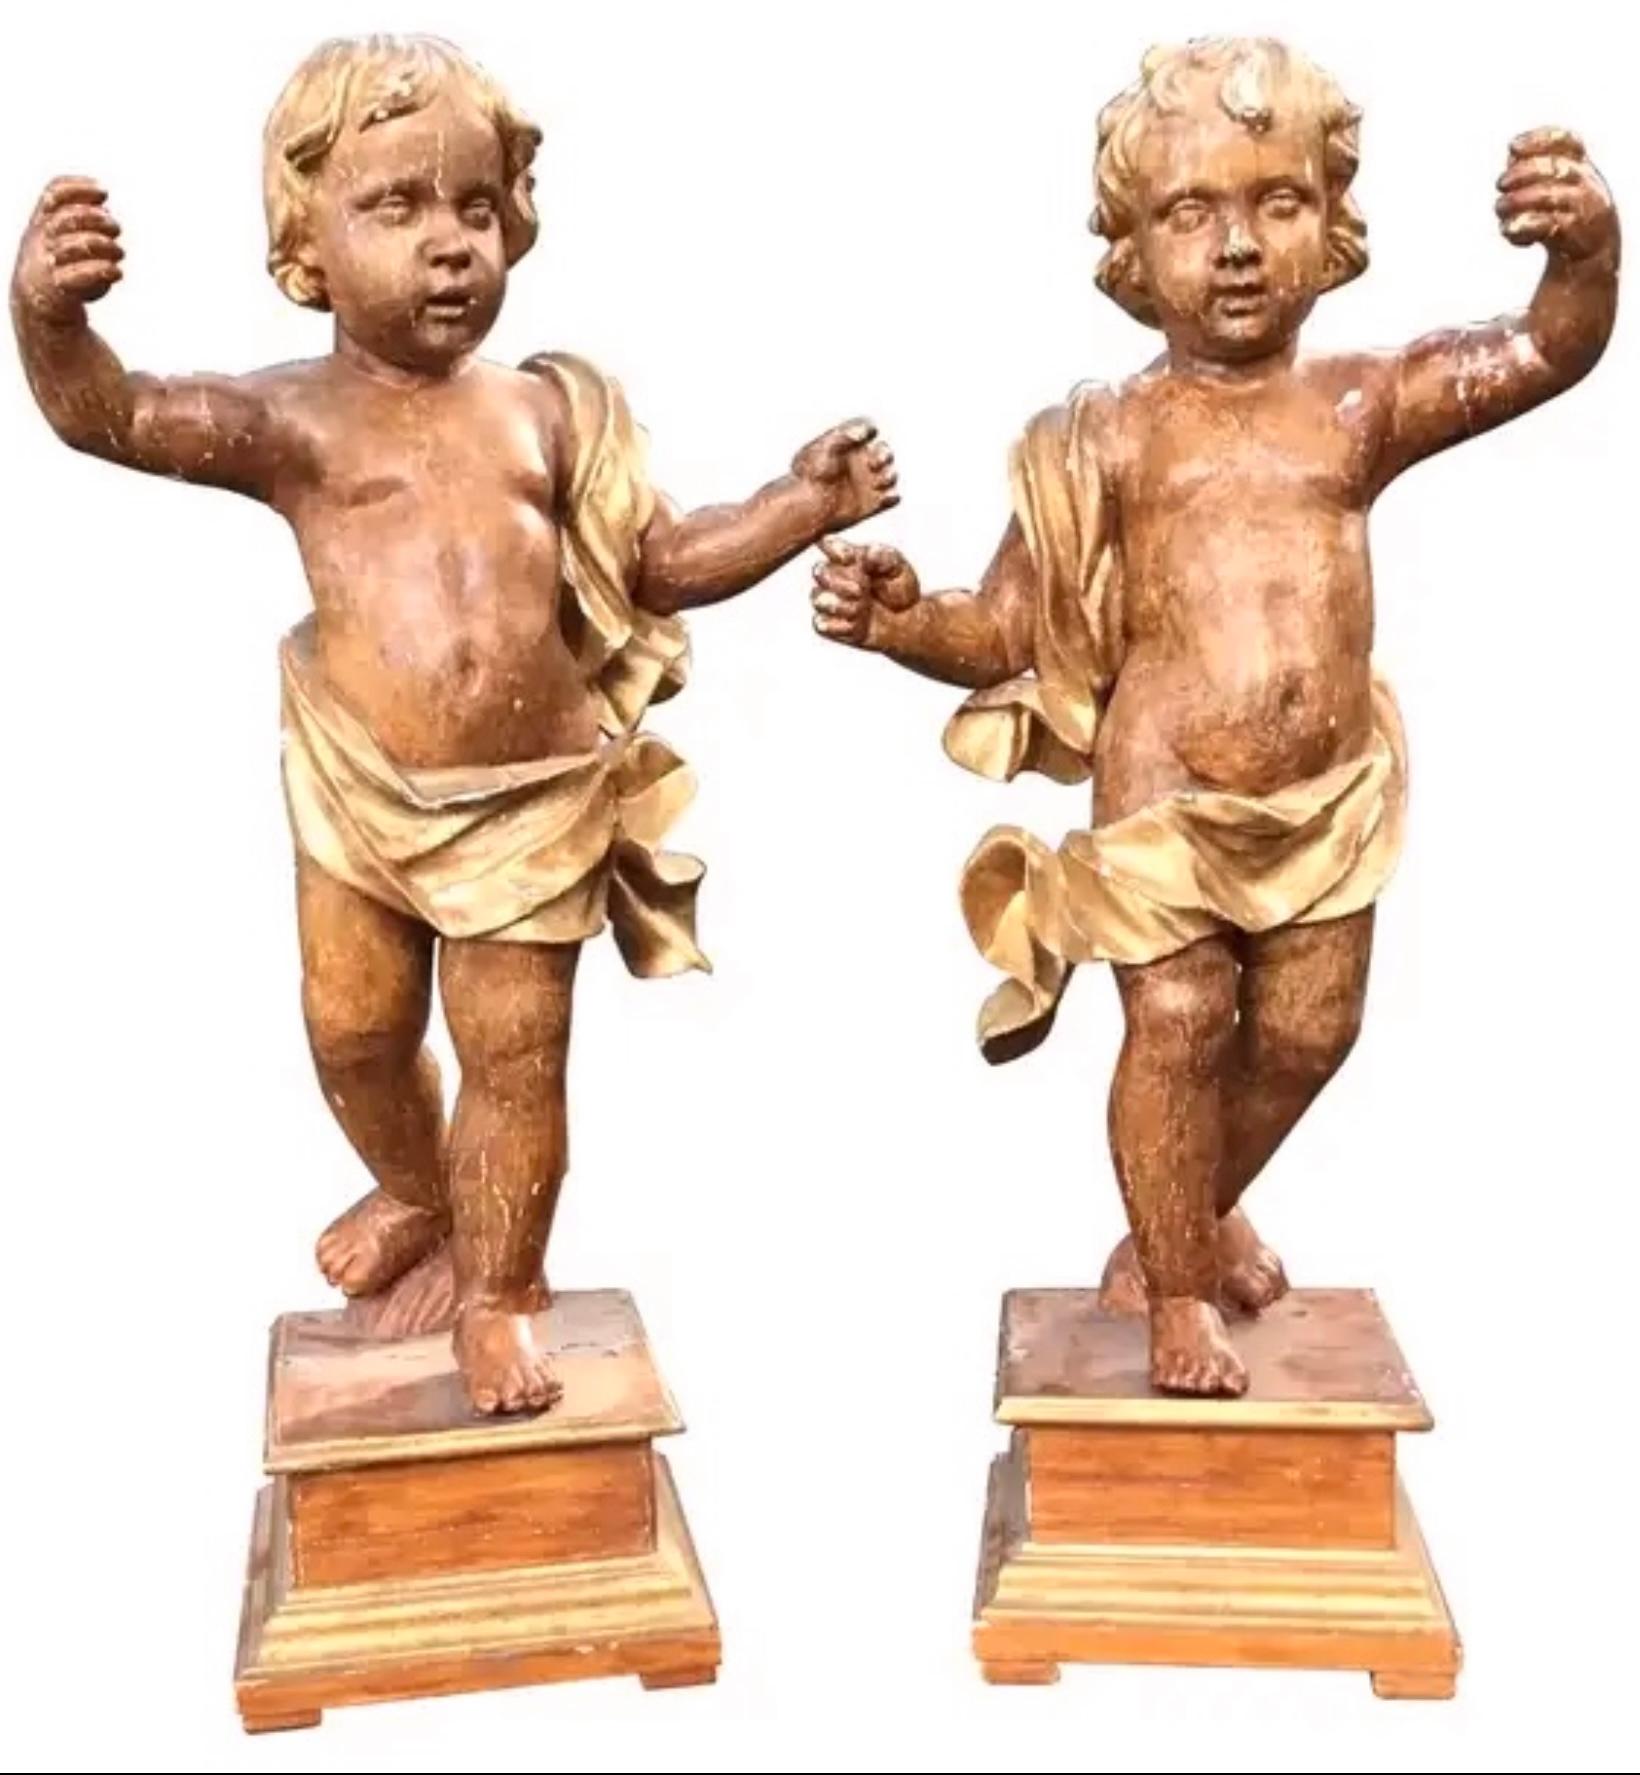 Il s'agit d'une superbe paire de sculptures italiennes de chérubins ou d'anges, datant du 18e siècle. D'une hauteur de près d'un mètre quatre-vingt-dix, le couple est assez grand et réaliste. Très impressionnant. Avec des crochets originaux en fer